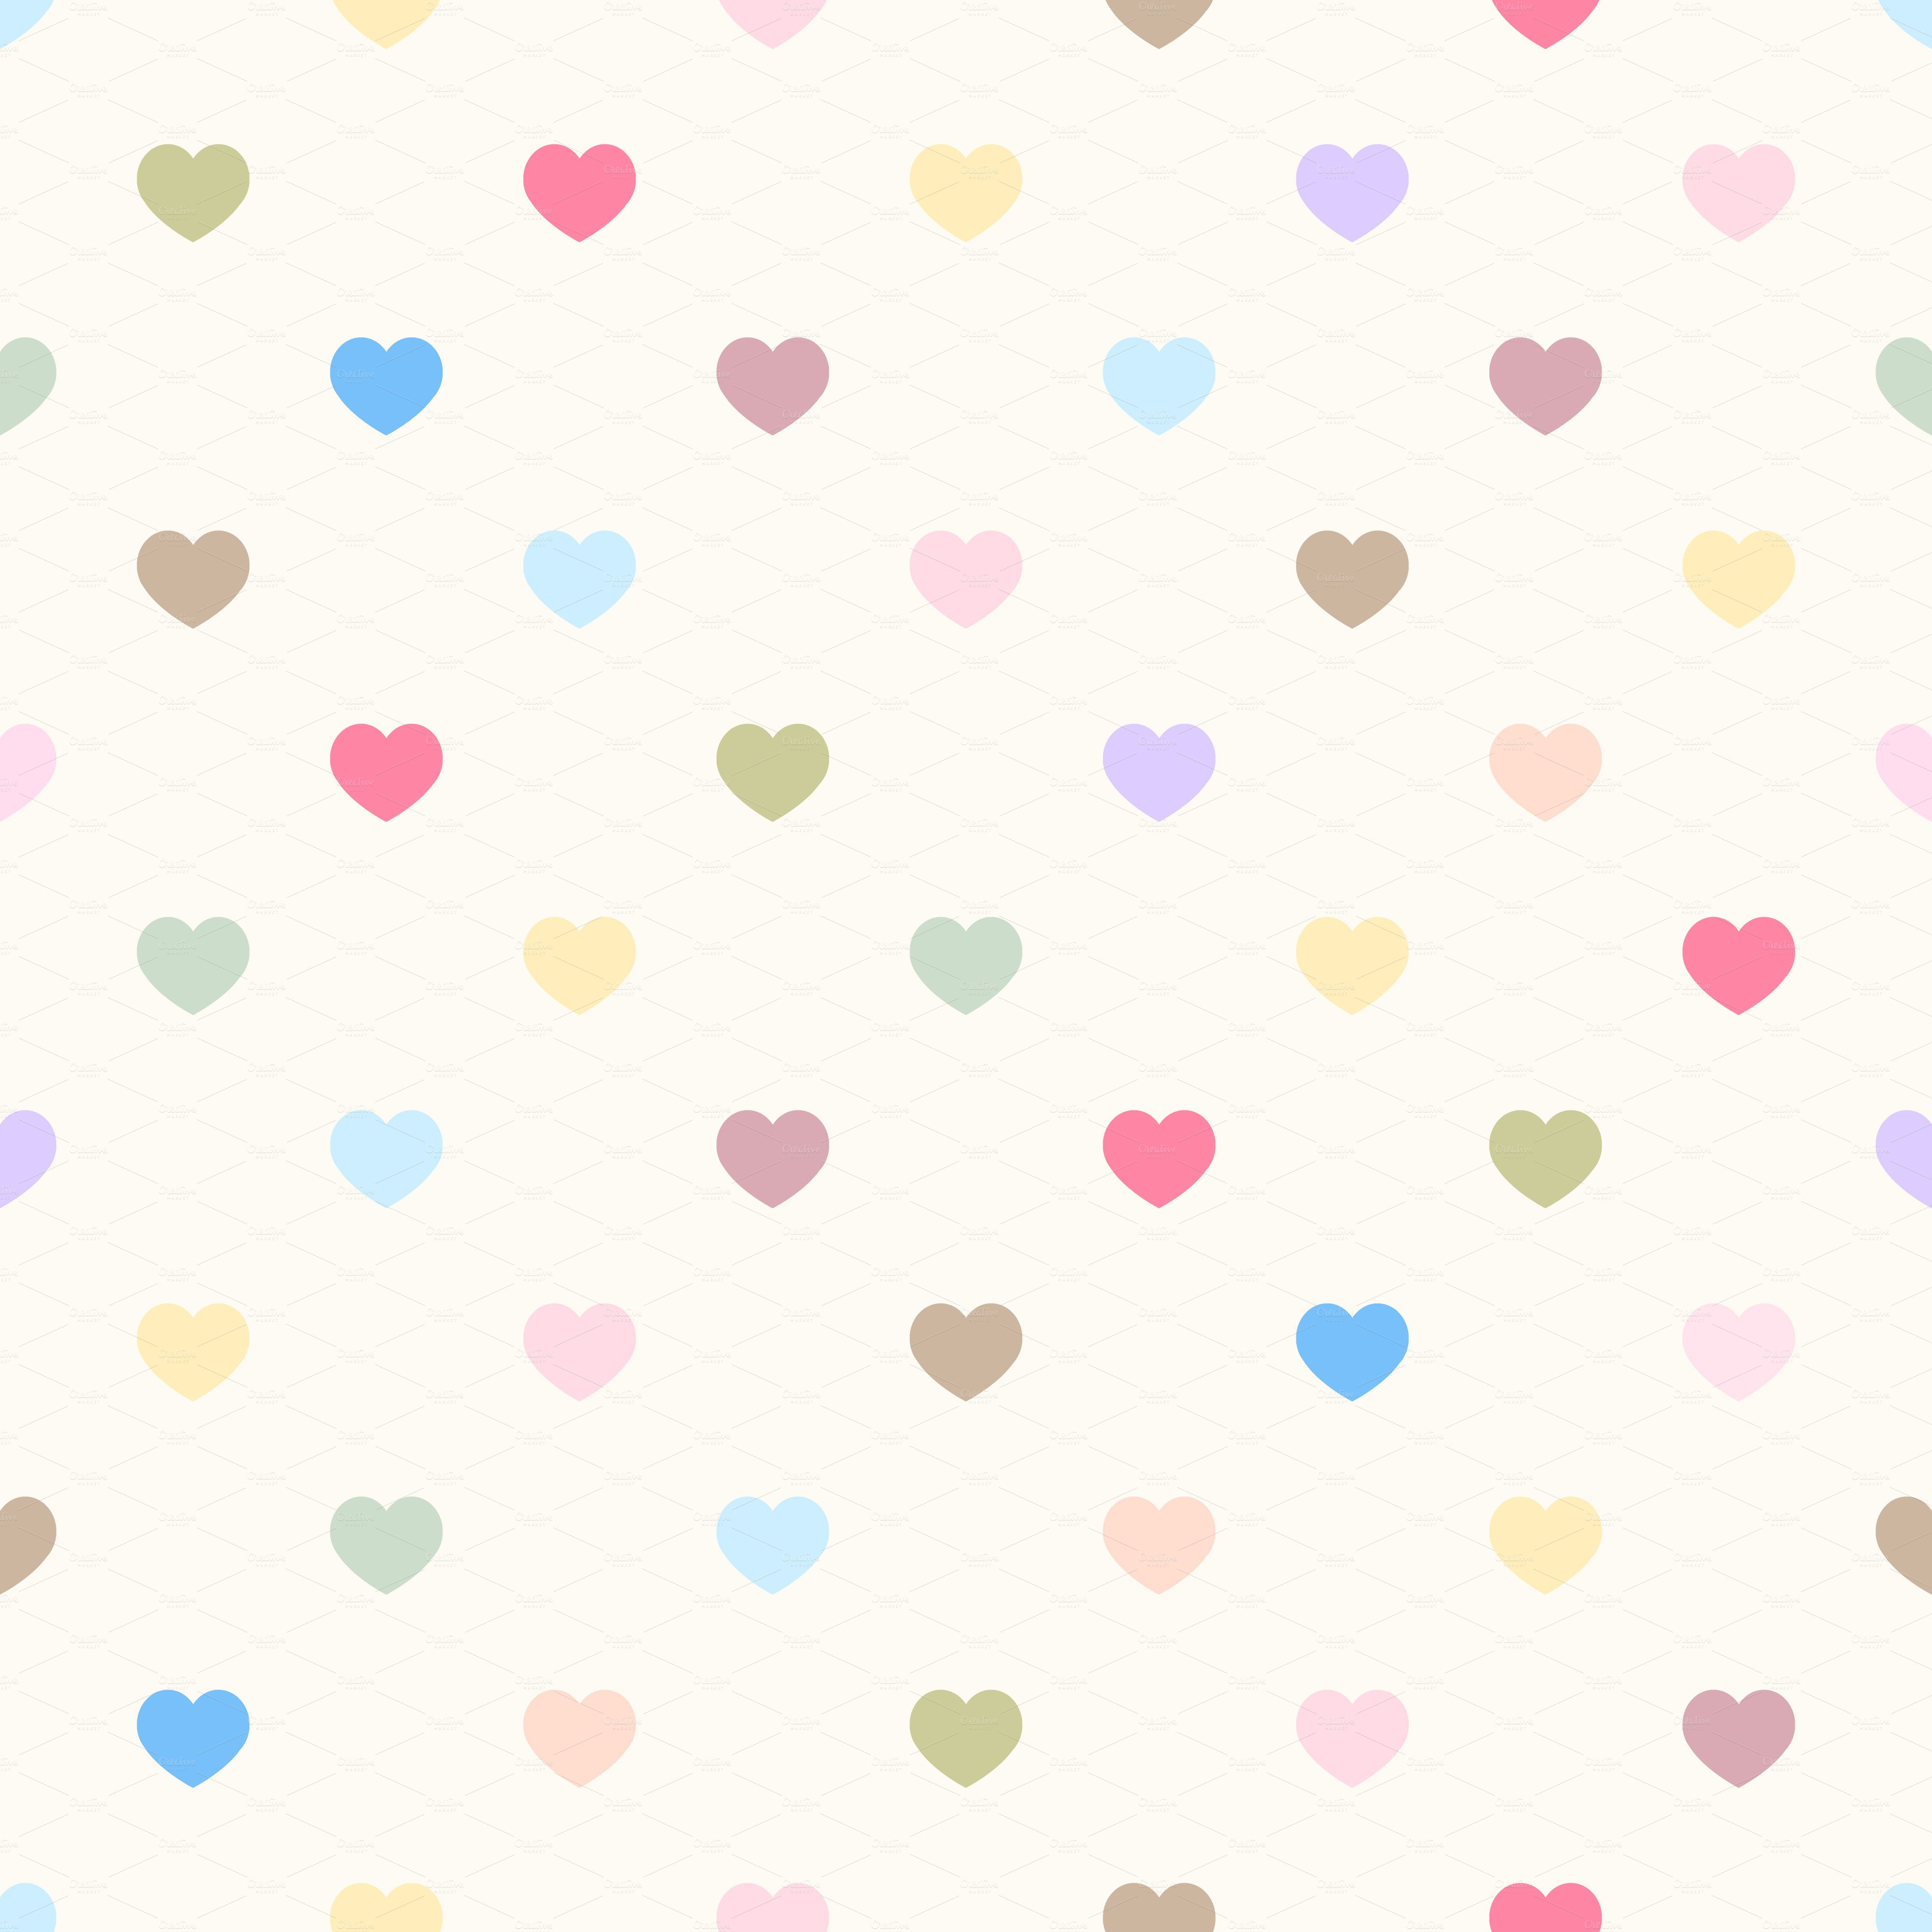 Cute Heart Tumblr Background. Cute